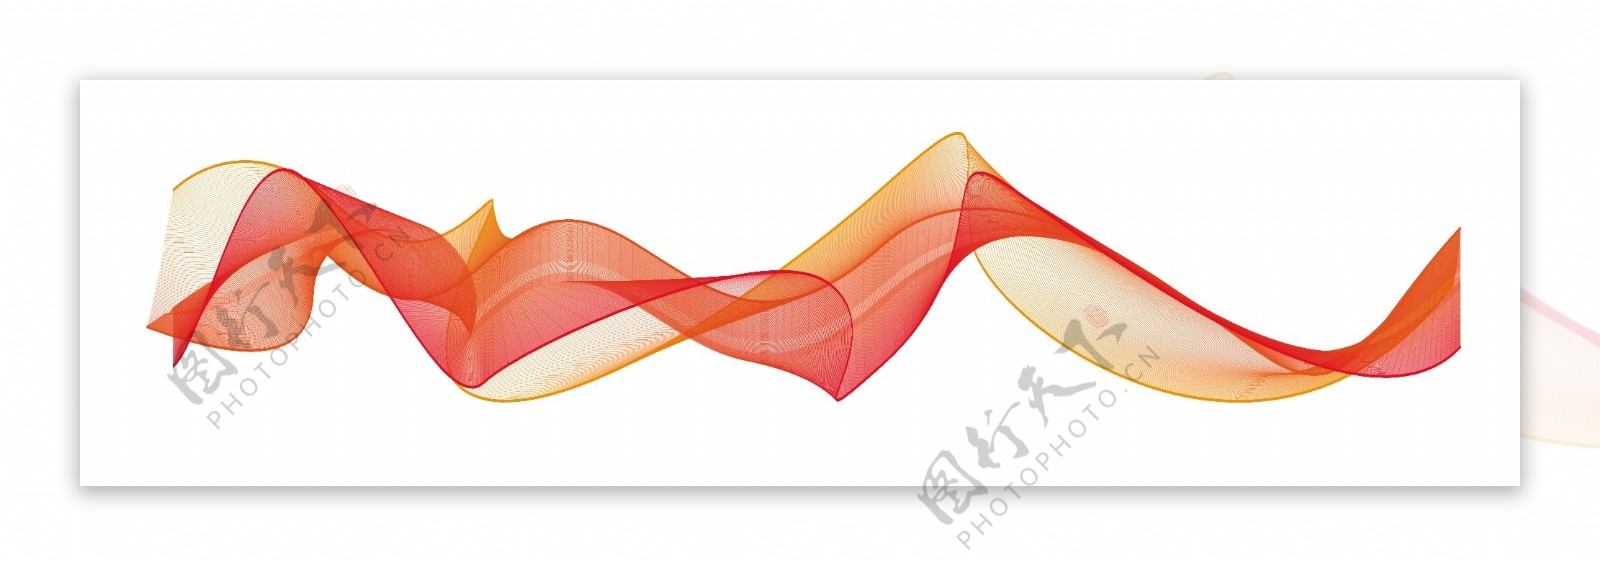 橙色波浪线